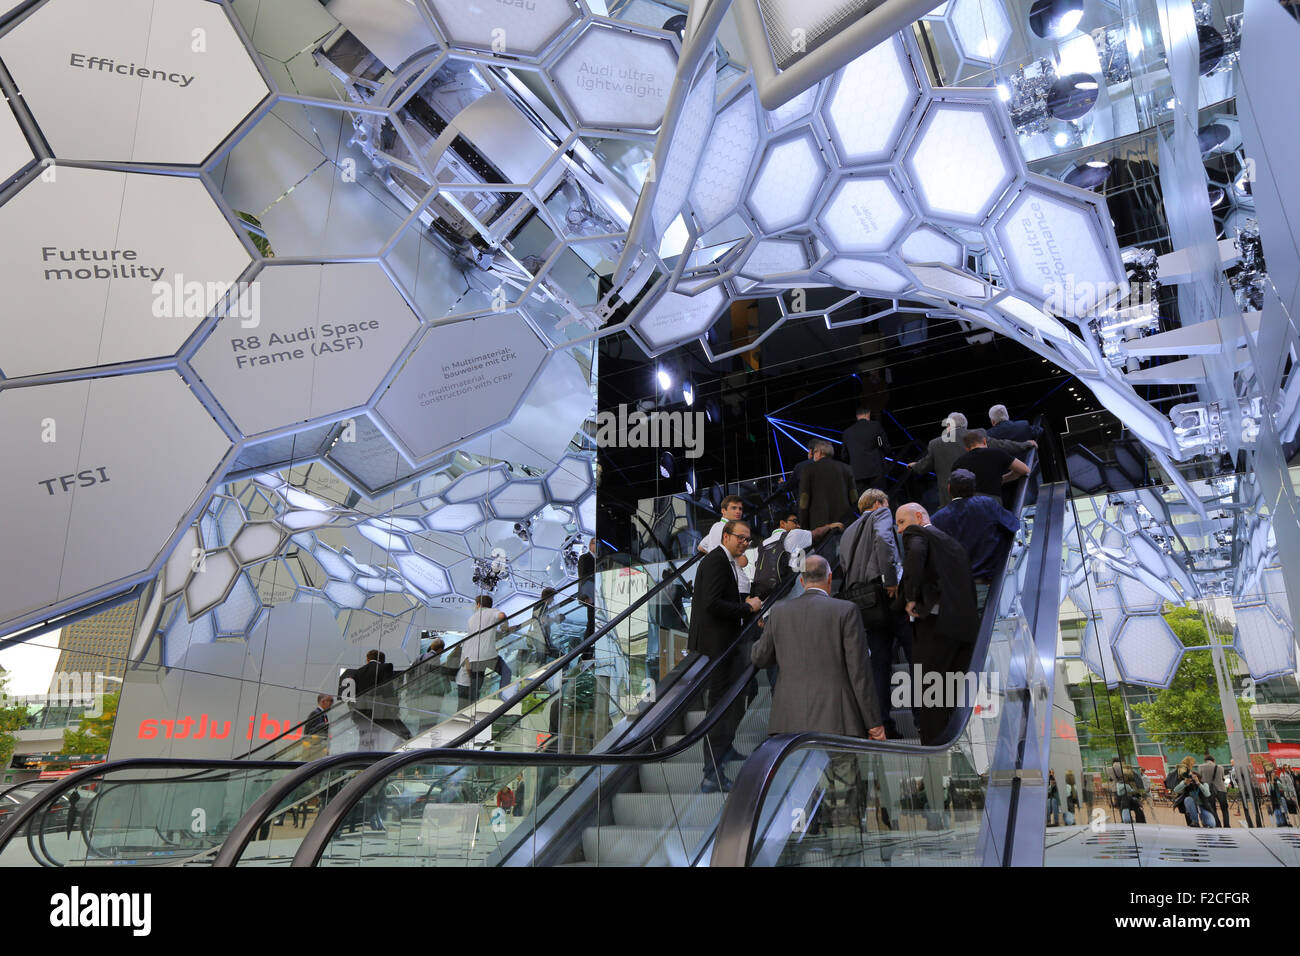 Frankfurt/M, 16.09.2015 - los visitantes entrar en el stand de Audi en el 66º Salón Internacional del Automóvil IAA 2015 (Internationale Automobil Ausstellung IAA) en Frankfurt/Main, Alemania Foto de stock